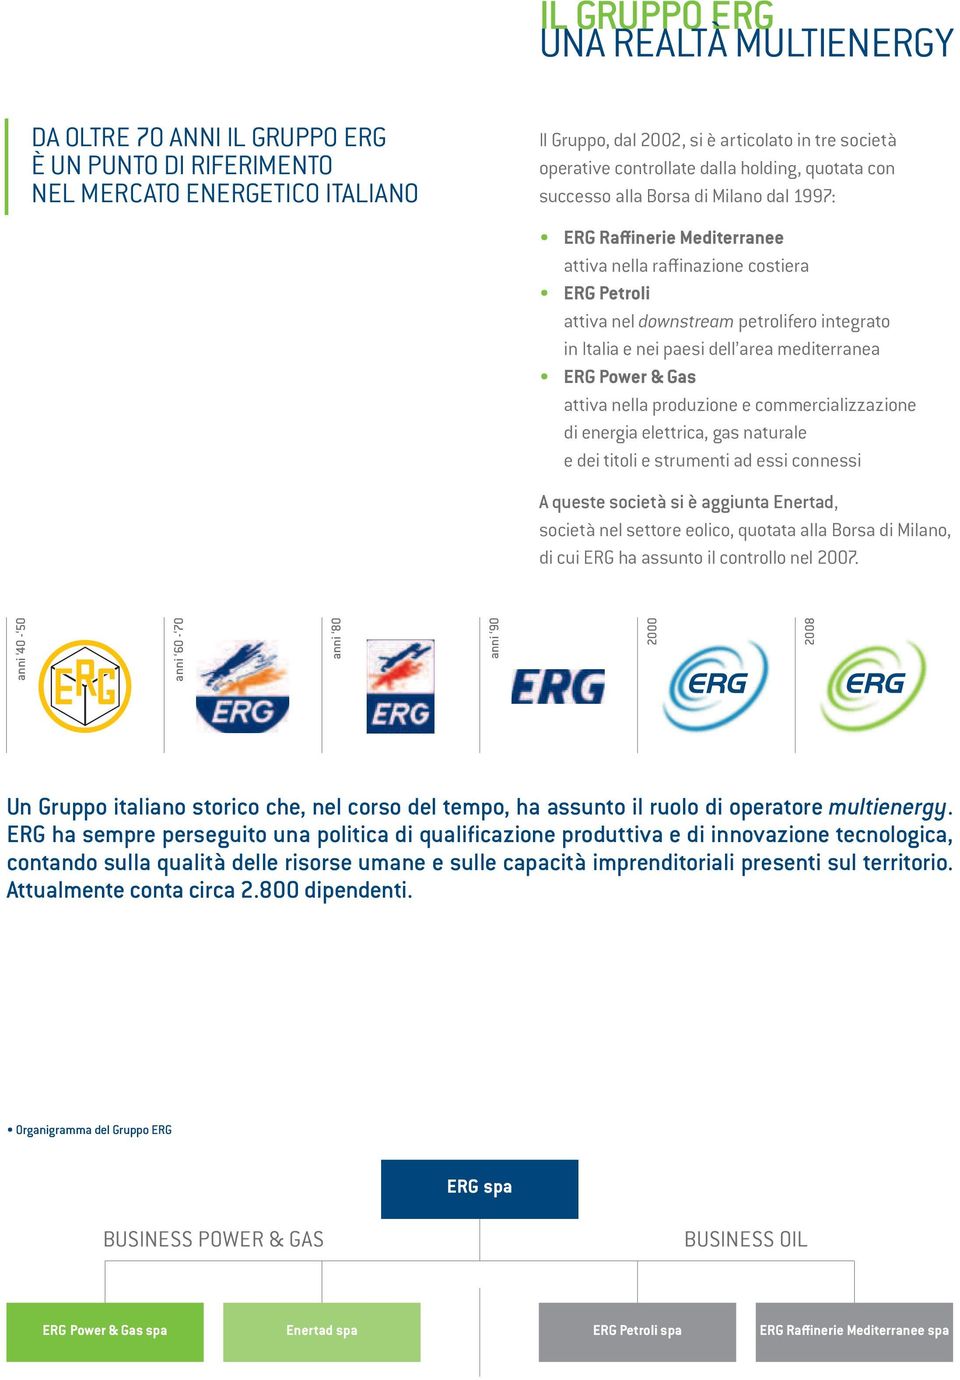 nei paesi dell area mediterranea ERG Power & Gas attiva nella produzione e commercializzazione di energia elettrica, gas naturale e dei titoli e strumenti ad essi connessi A queste società si è